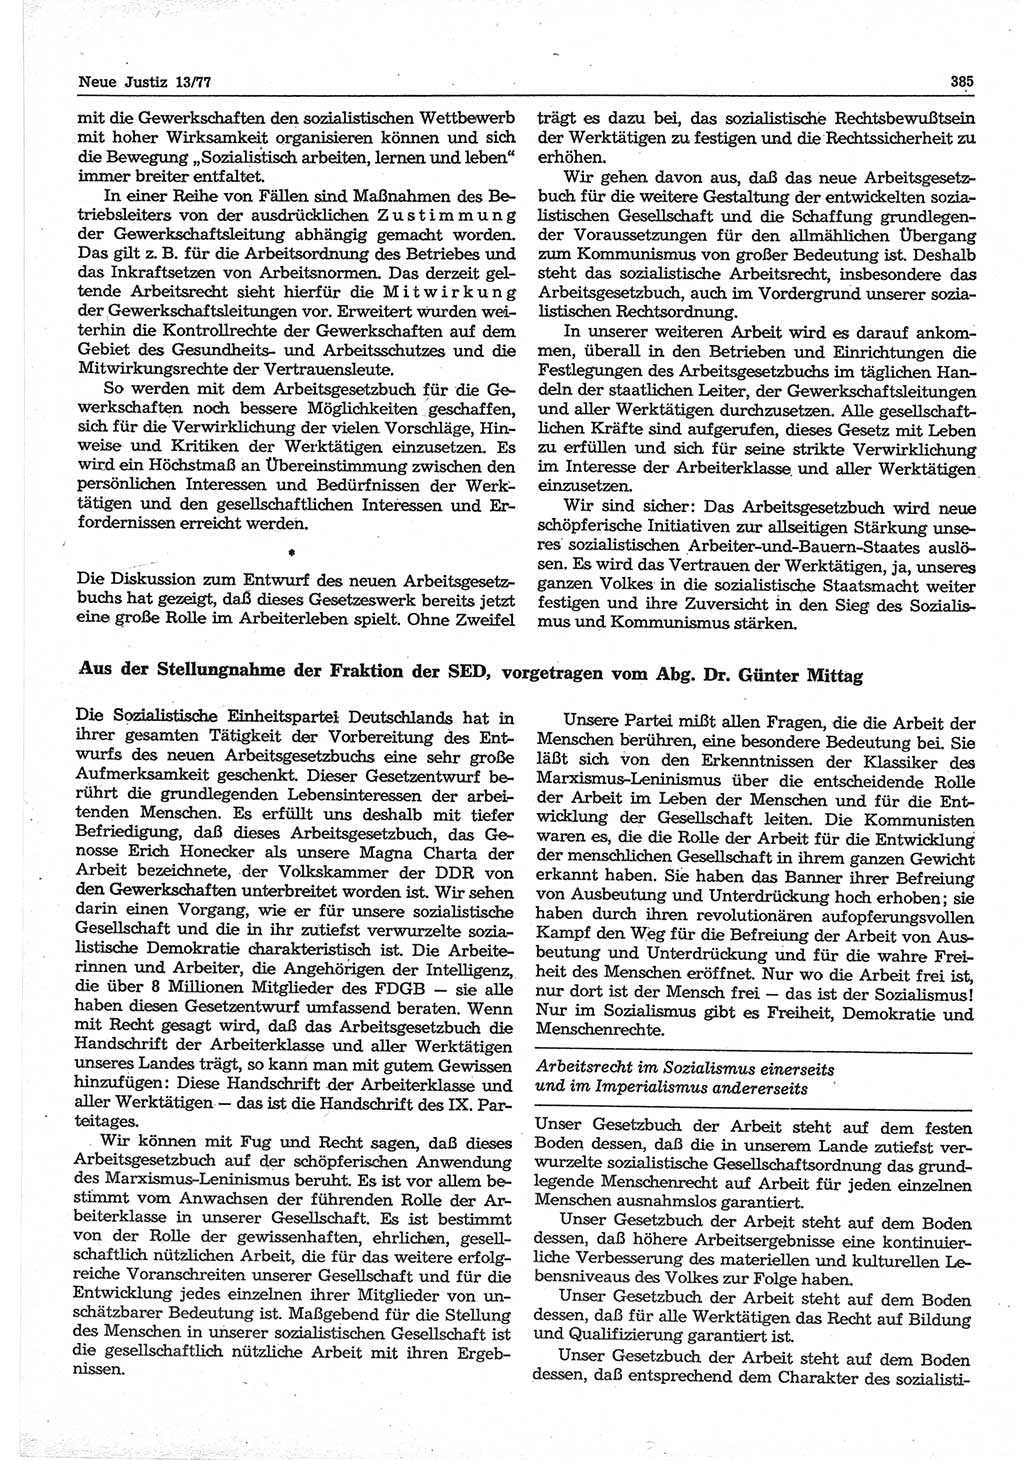 Neue Justiz (NJ), Zeitschrift für Recht und Rechtswissenschaft-Zeitschrift, sozialistisches Recht und Gesetzlichkeit, 31. Jahrgang 1977, Seite 385 (NJ DDR 1977, S. 385)